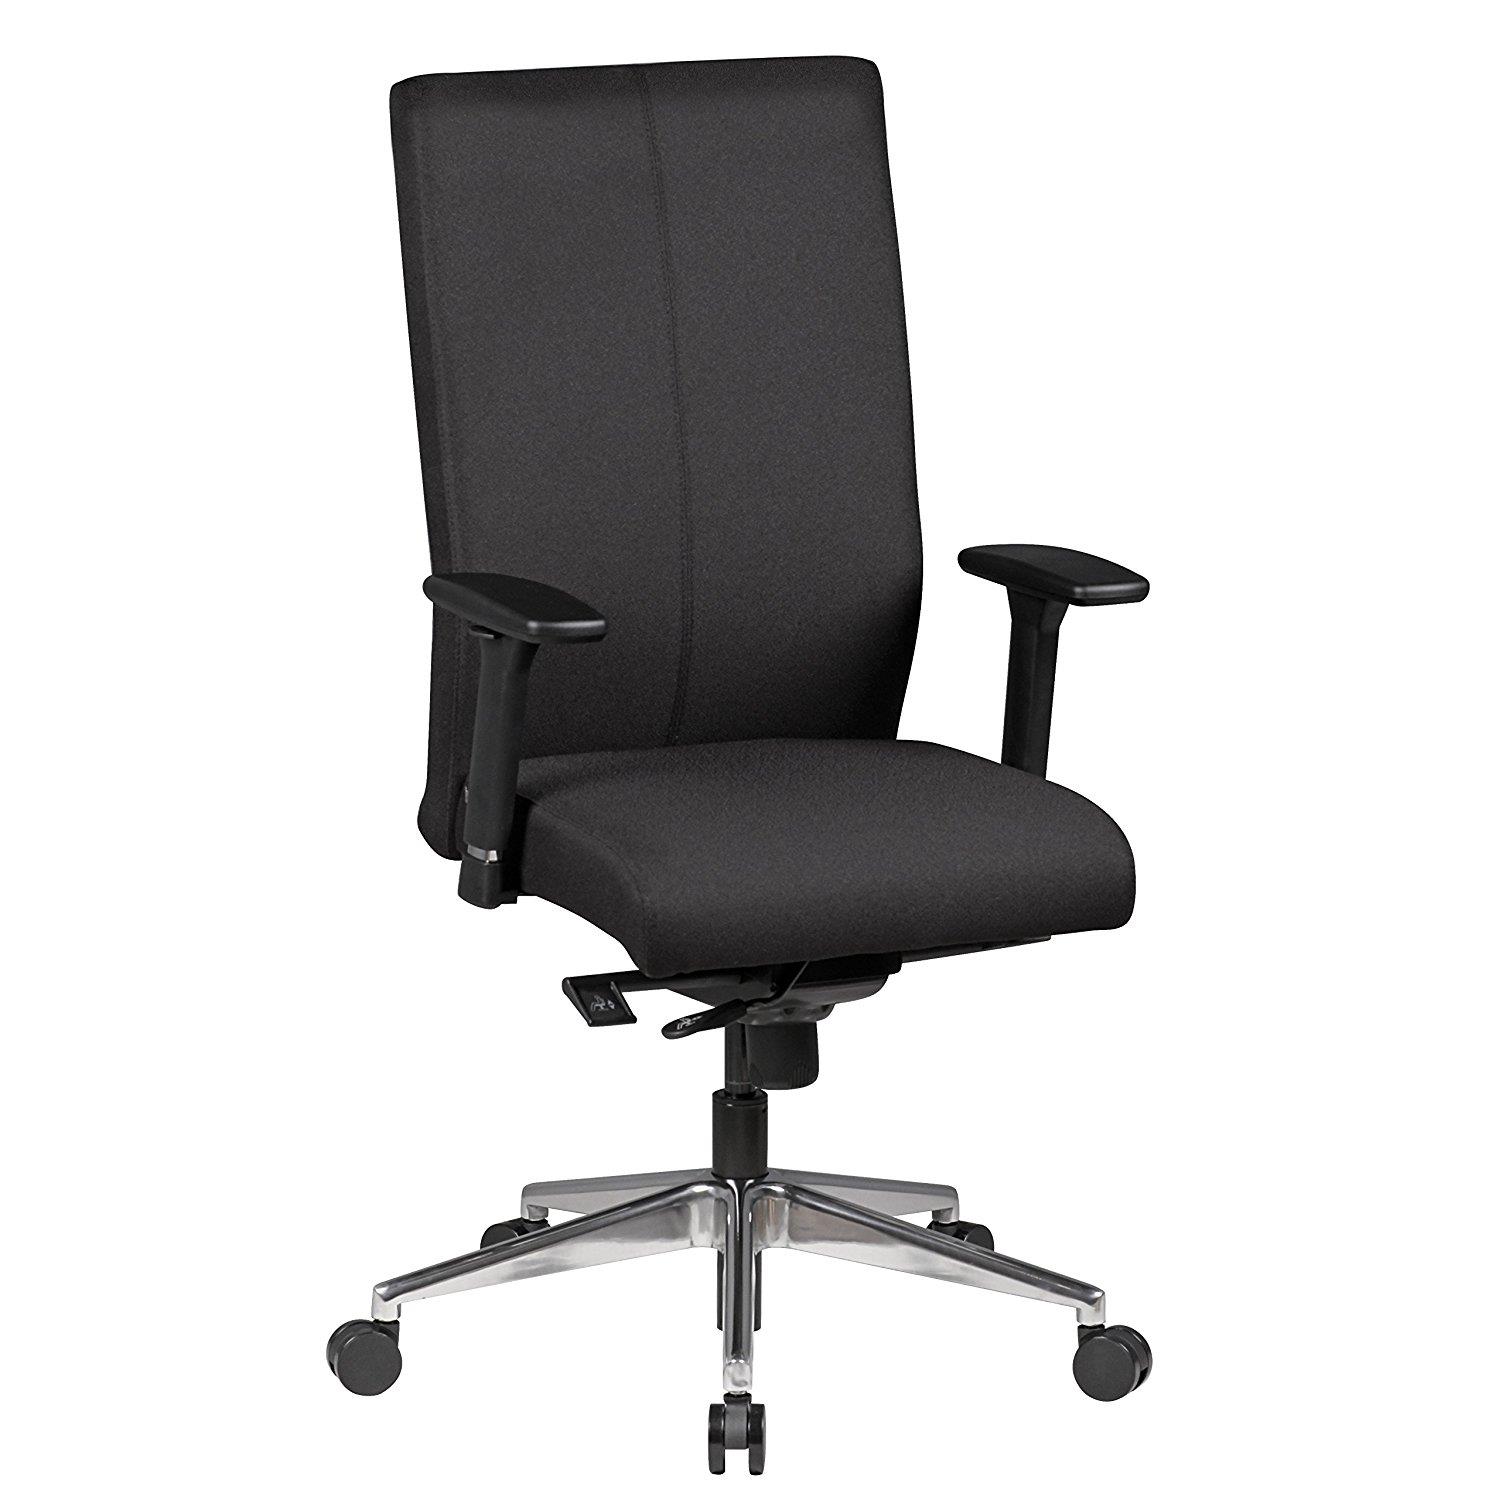 Ergonomischer Bürostuhl CUTY, maximaler Komfort und Robustheit, für die 8h-Nutzung, Stoffbezug, Farbe Schwarz